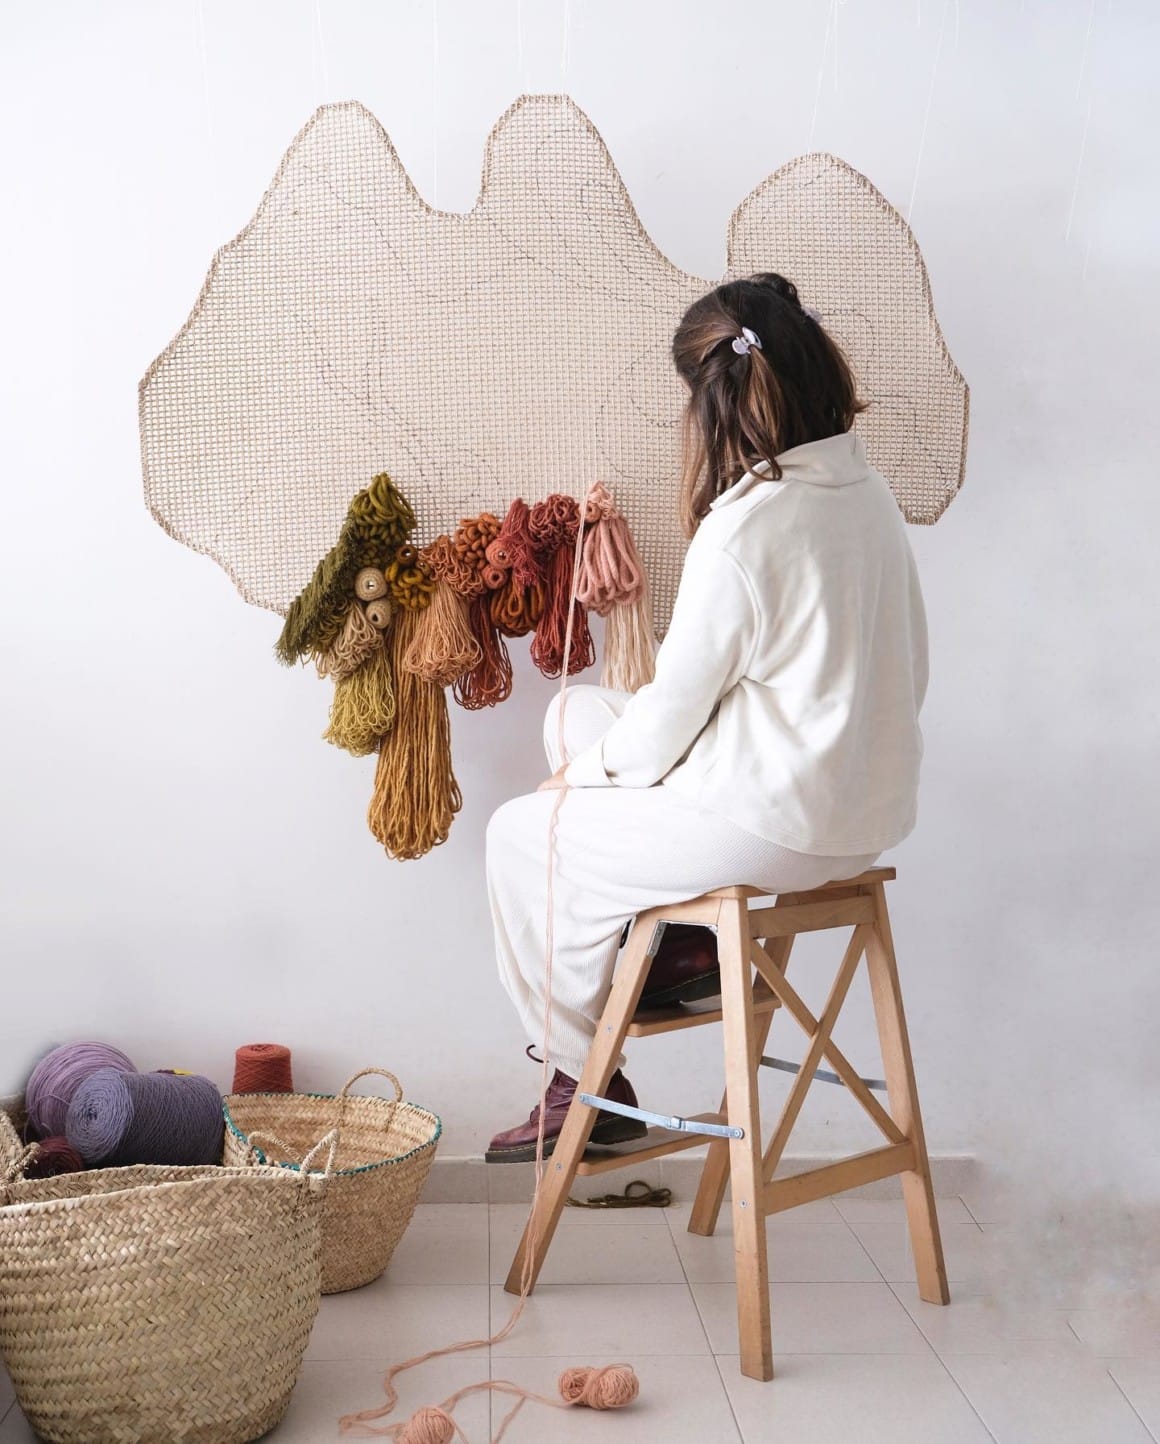 on voit l'artiste en train de réaliser une oeuvre avec des bobines de fil et de laine